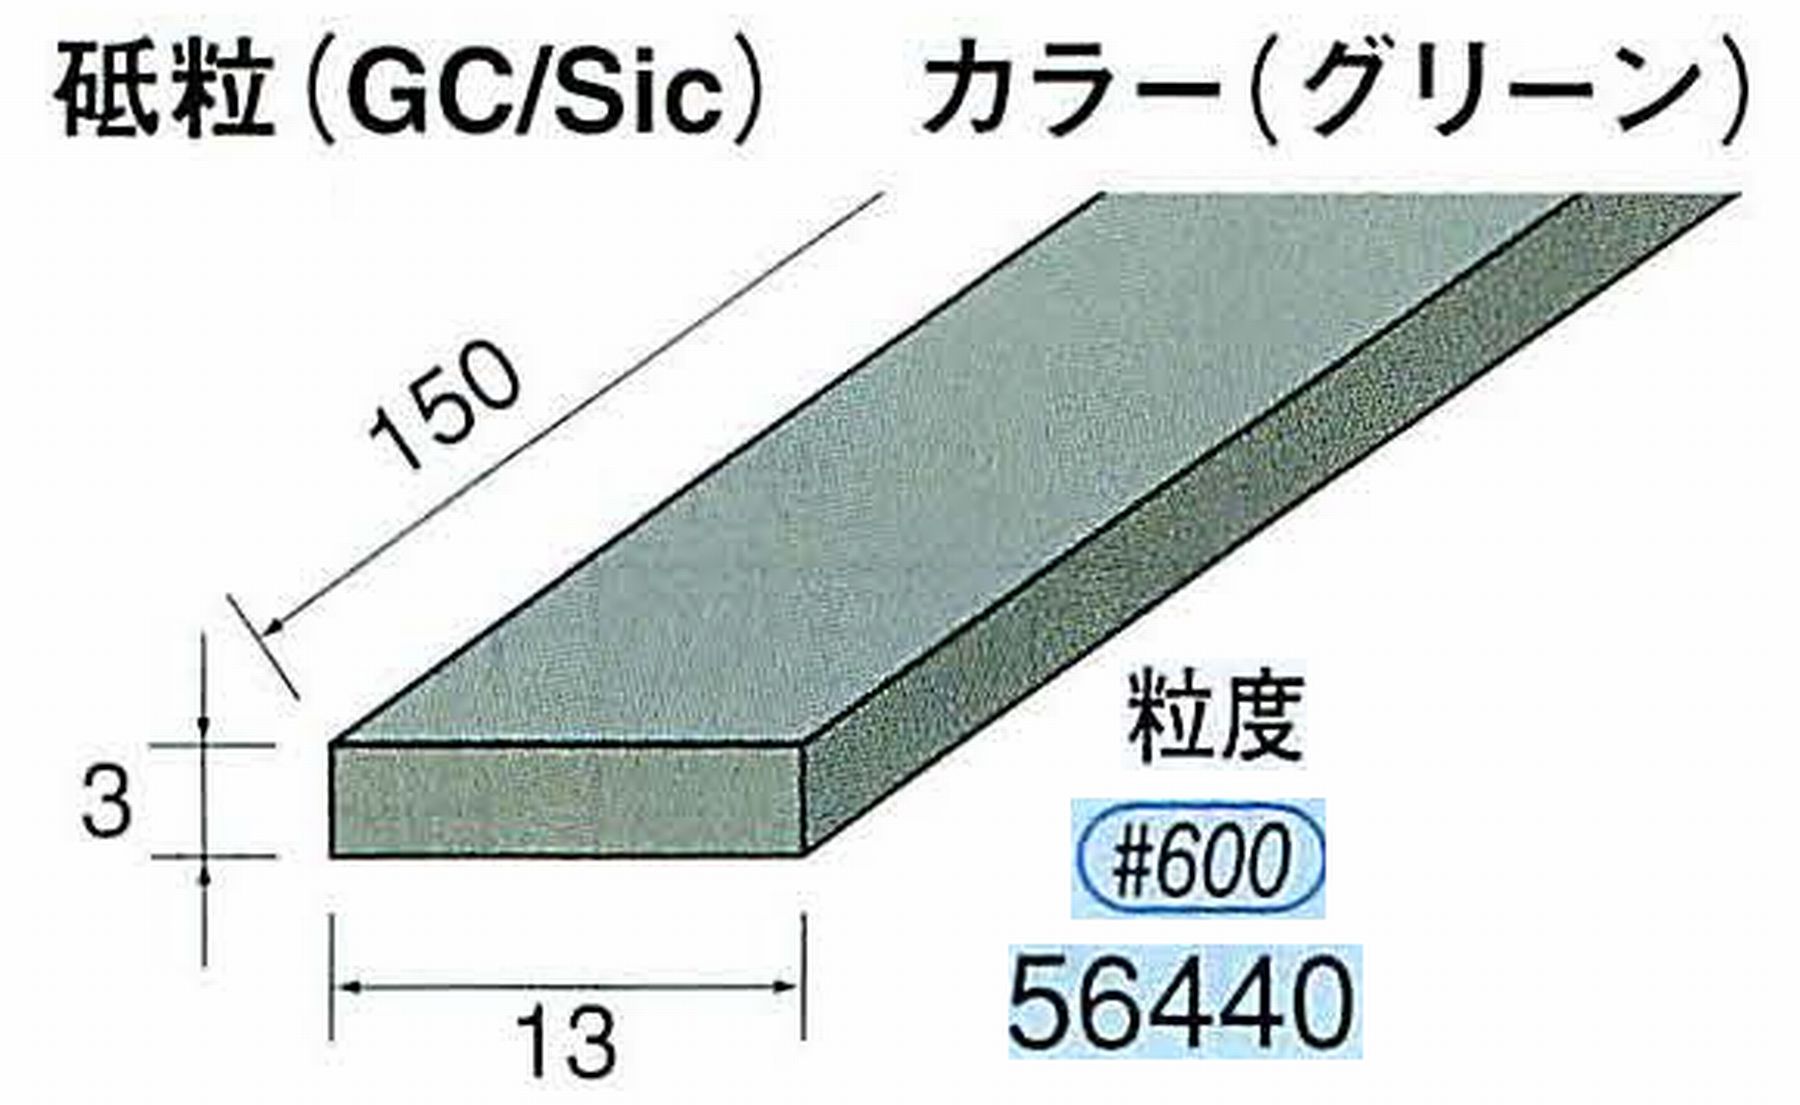 ナカニシ/NAKANISHI スティック砥石 グリーン・フィニッシュシリーズ 砥粒(GC/Sic) 56440